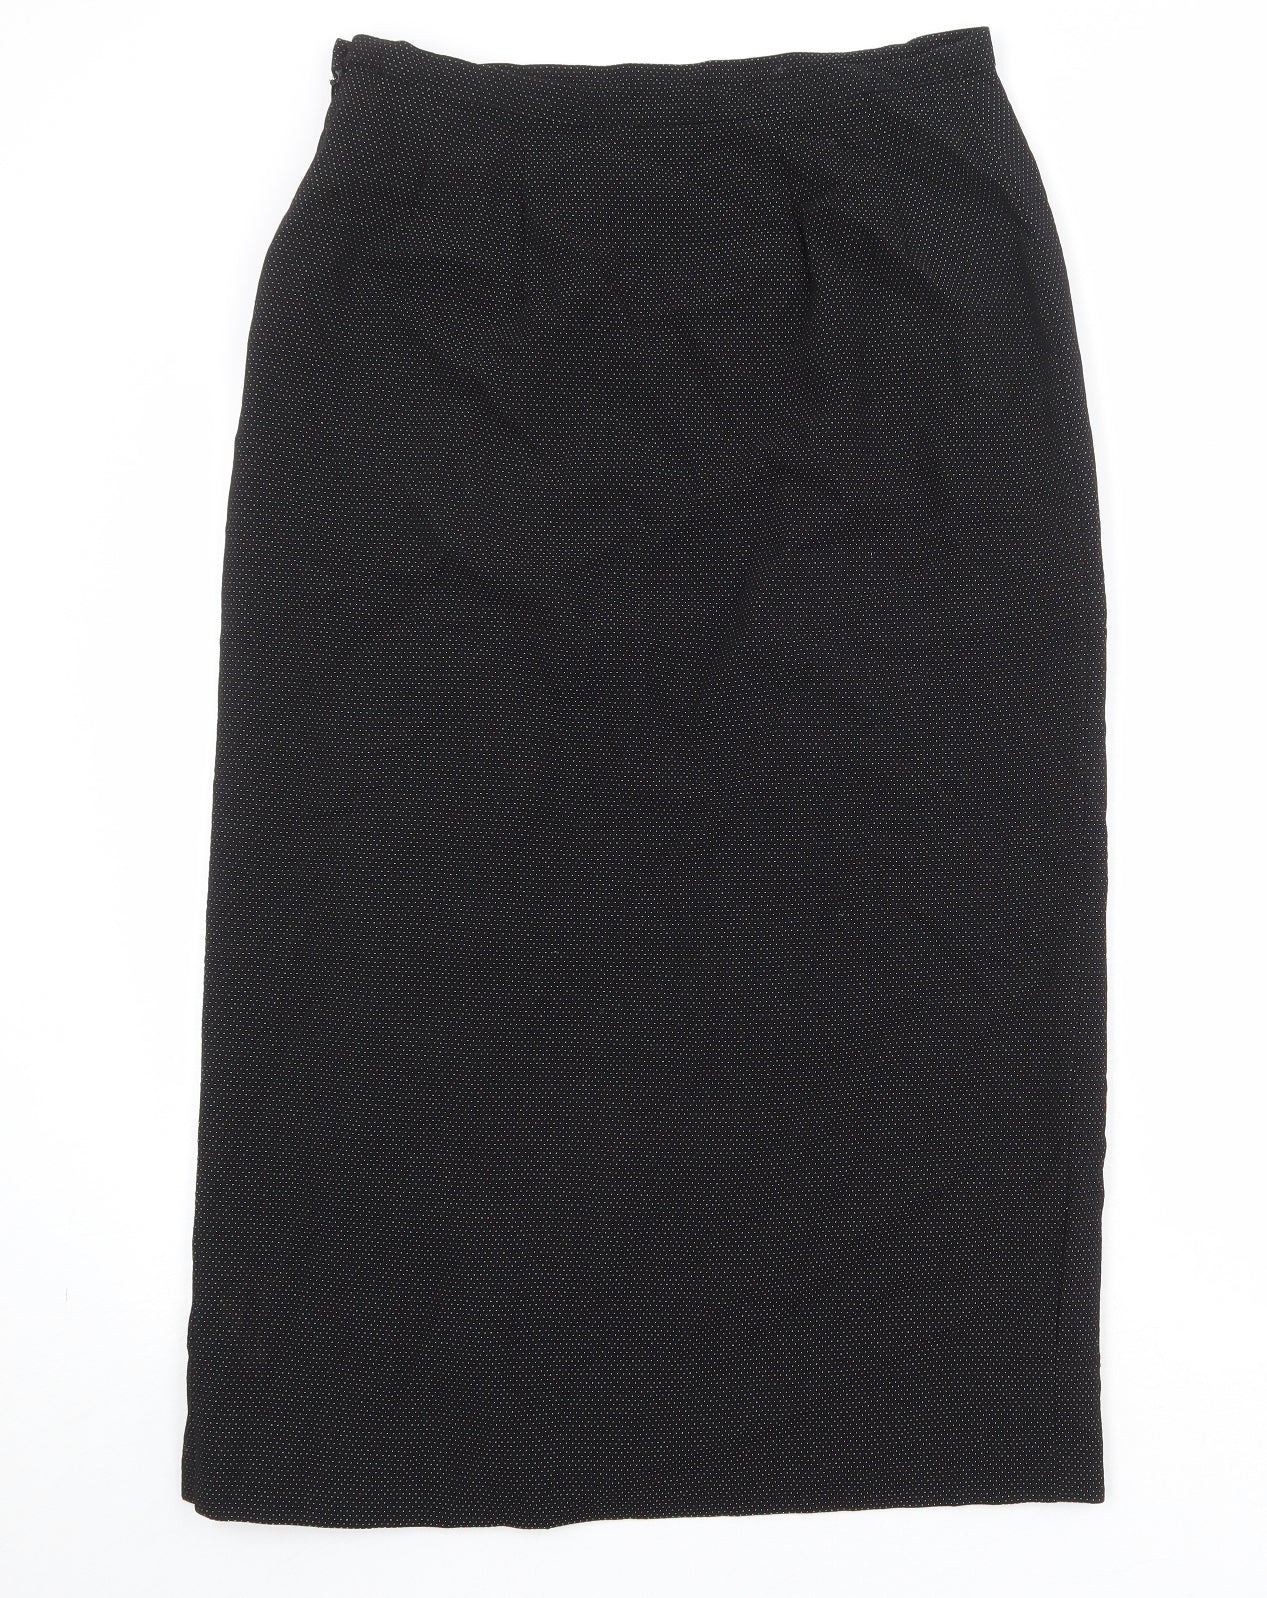 Minuet Womens Black Geometric Polyester A-Line Skirt Size 14 Zip